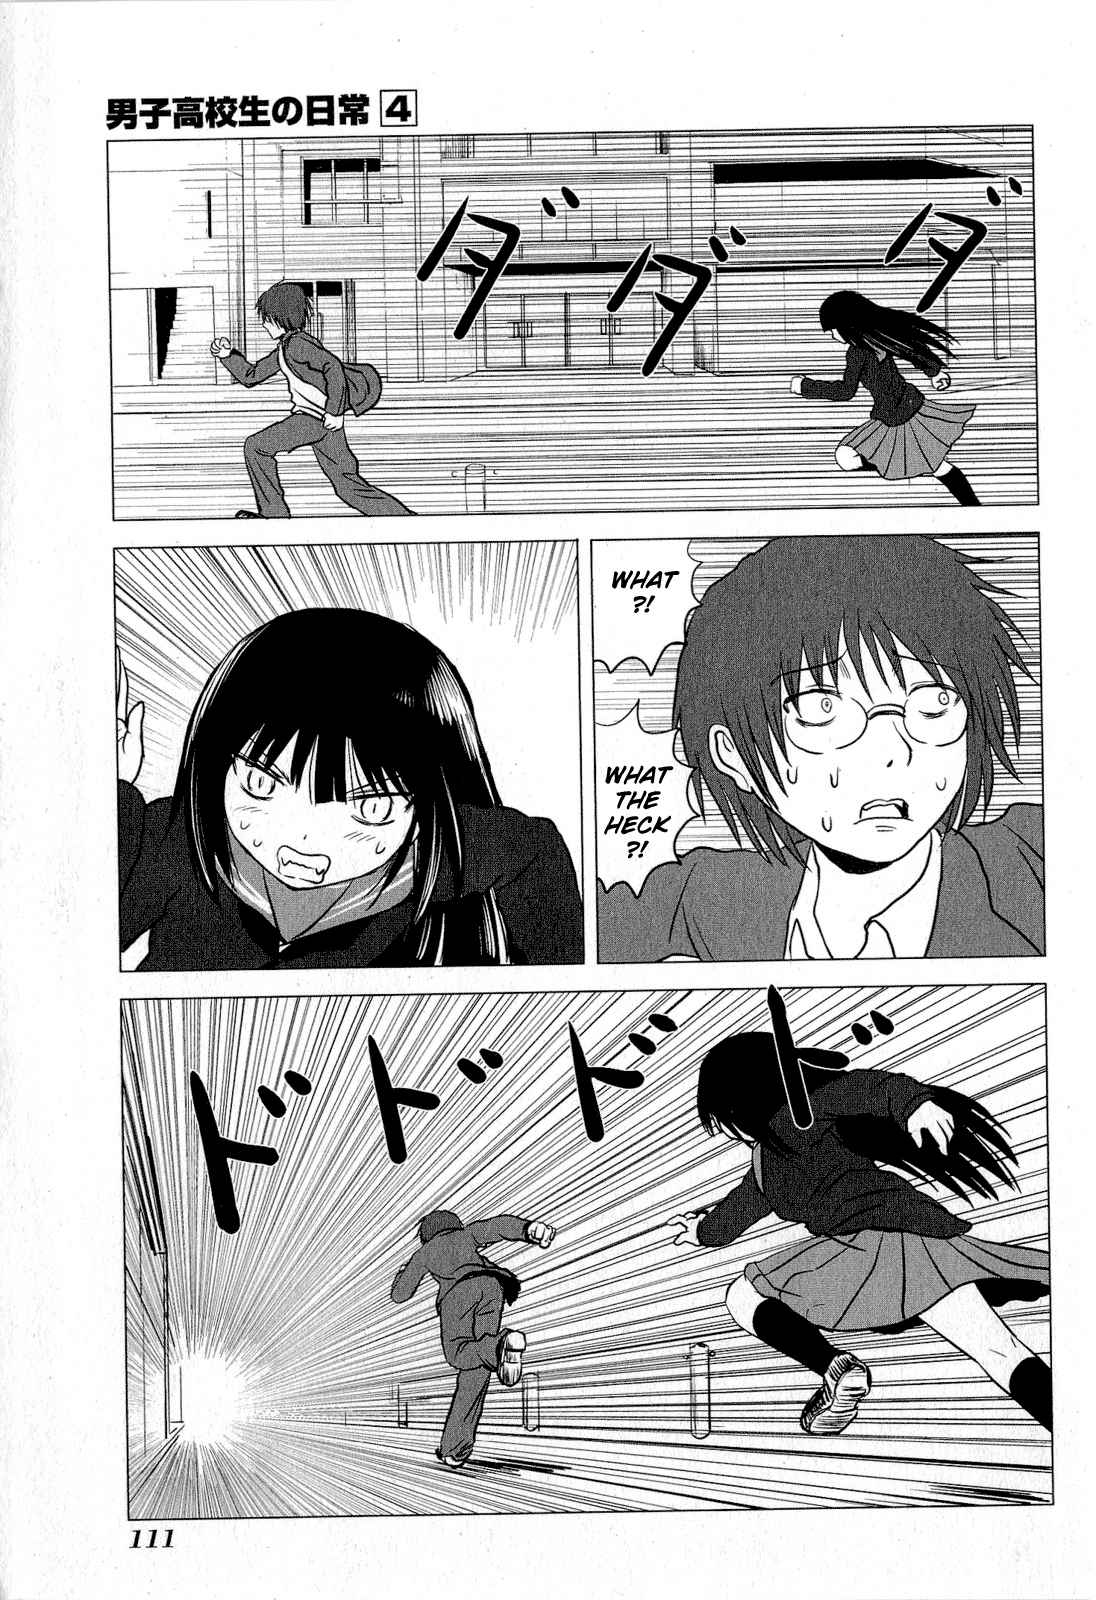 Danshi Koukousei no Nichijou Vol. 4 Ch. 64 High School Boys And Running